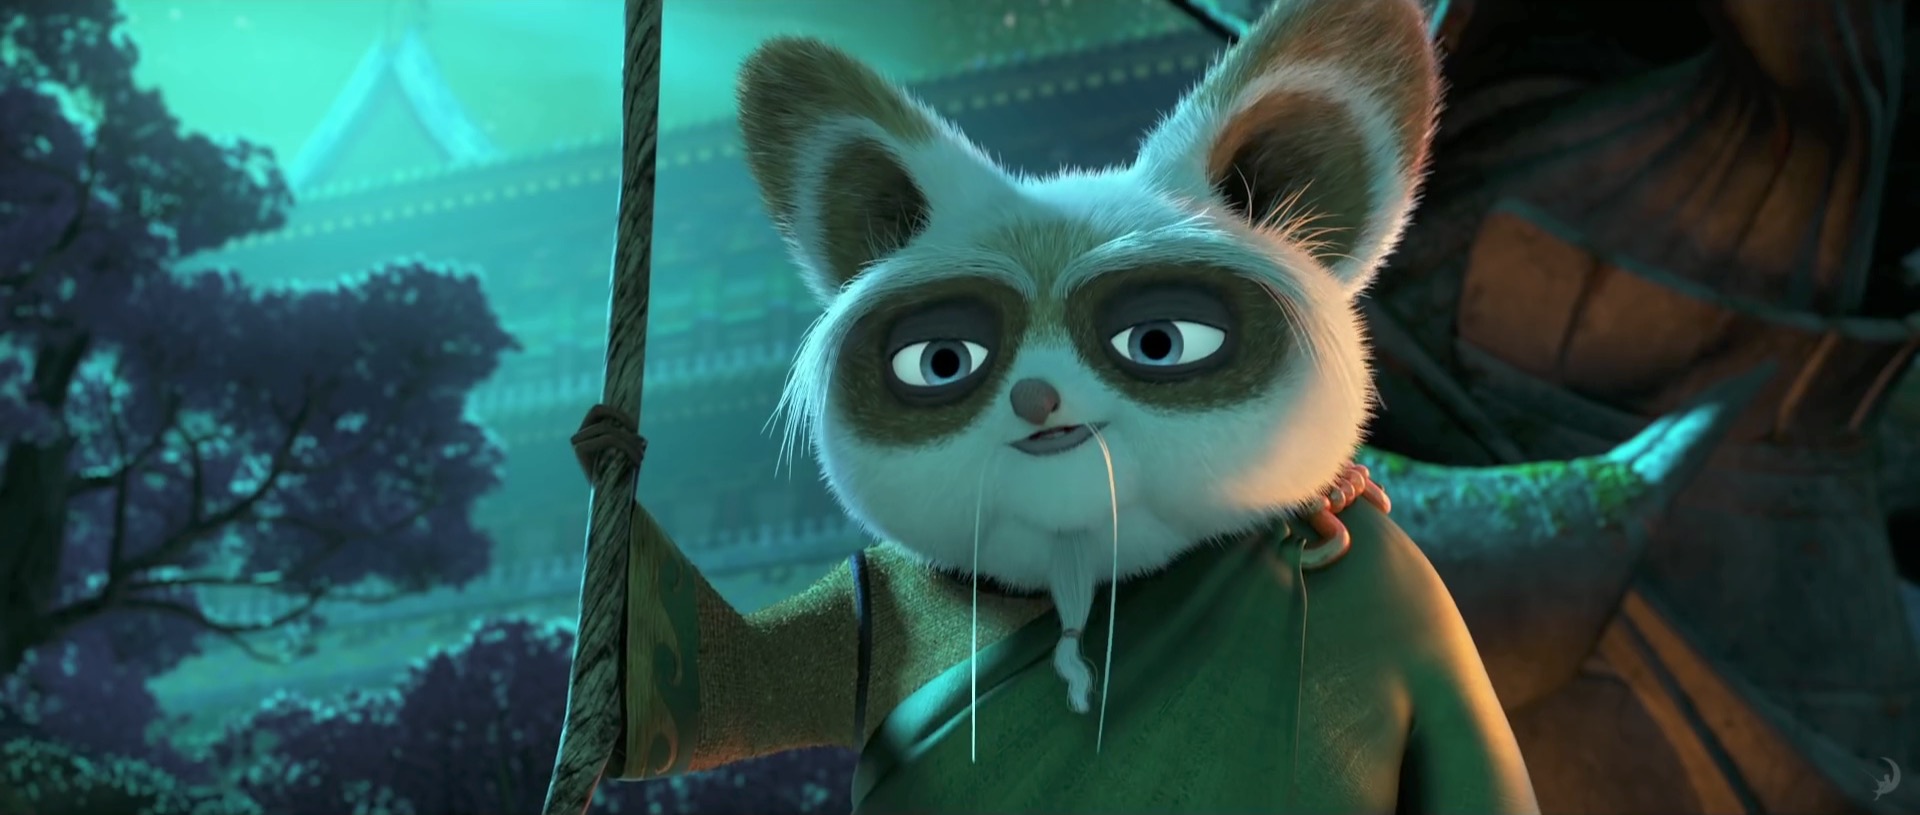 kung fu panda 3 full movie free download